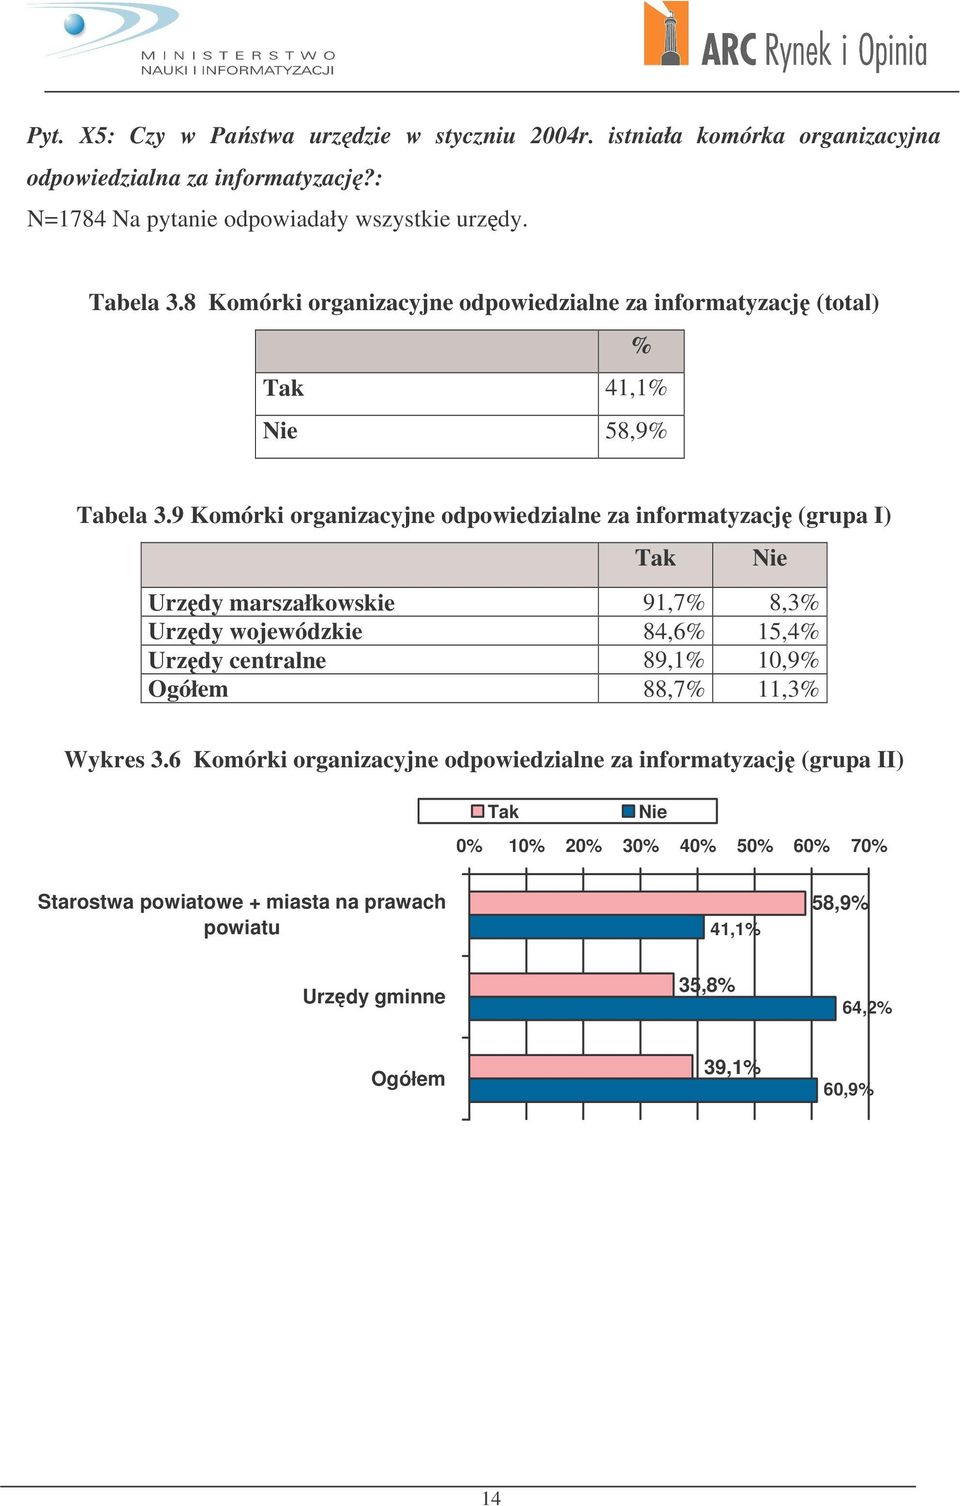 9 Komórki organizacyjne odpowiedzialne za informatyzacj (grupa I) Tak Nie marszałkowskie 91,7% 8,3% wojewódzkie 84,6% 15,4% centralne 89,1% 10,9% 88,7% 11,3%